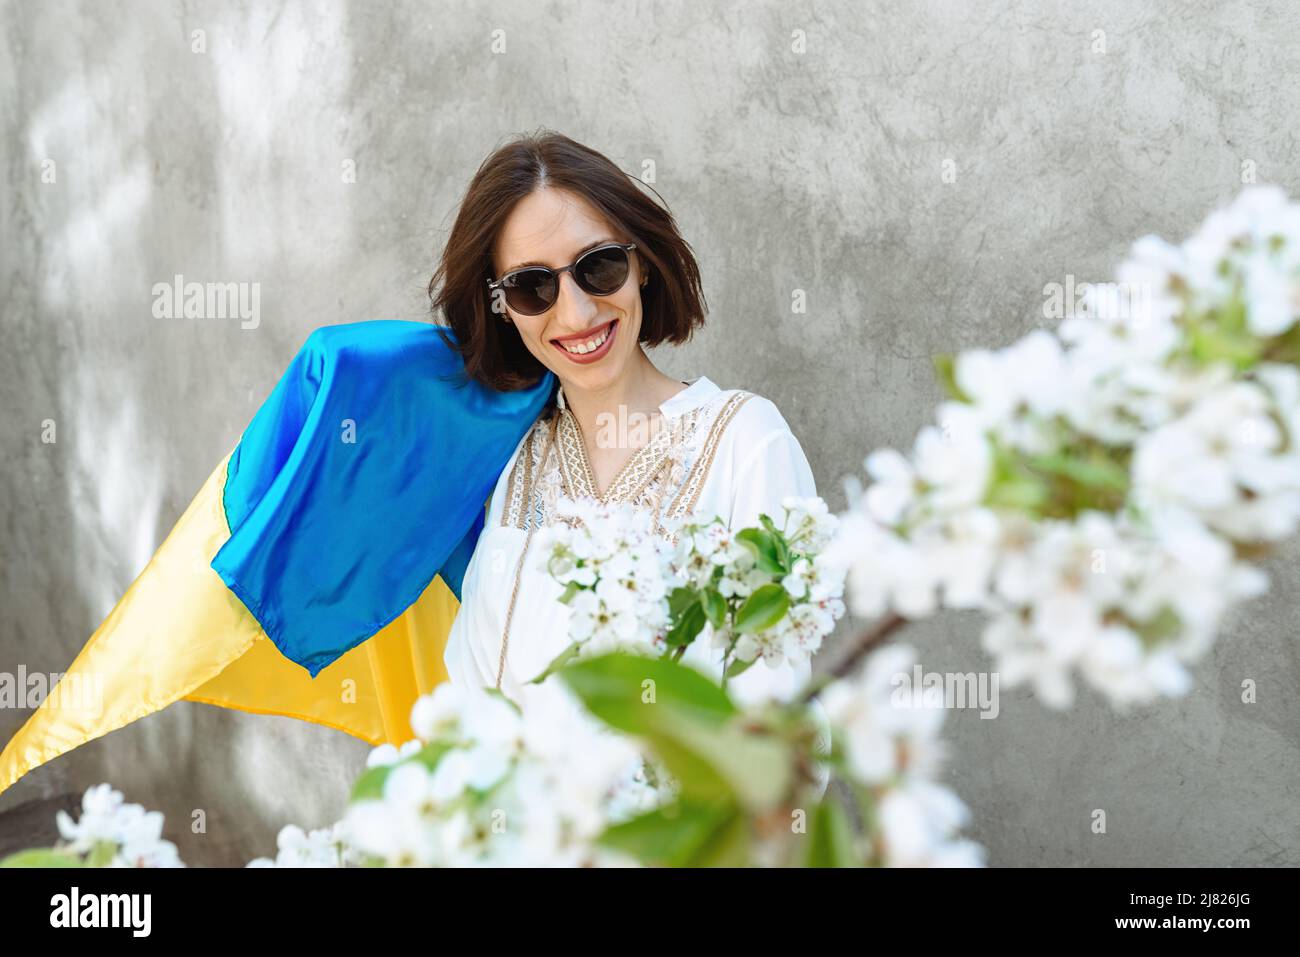 Une fille en robe blanche et des lunettes de soleil en ville sur fond de  mur de béton agite le drapeau ukrainien national, célébrant la victoire.  Fleurs de pomme. Copier l'espace. Idée